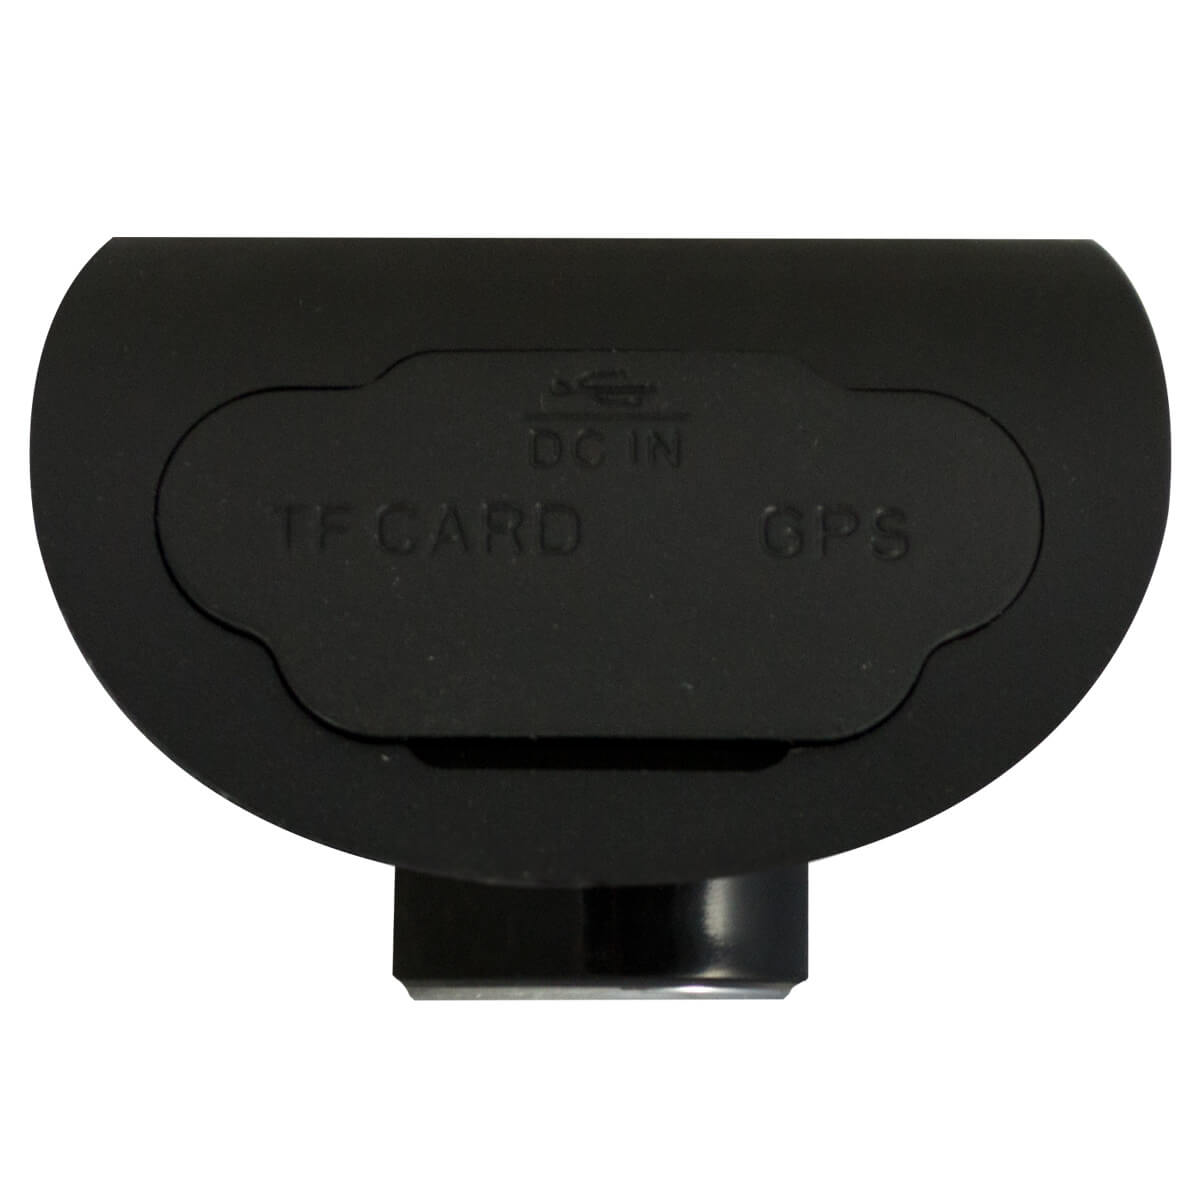 DVR portatil autos, Pantalla TFT LCD, MJPEG, 1/4 Sensor CMOS, G-Sensor